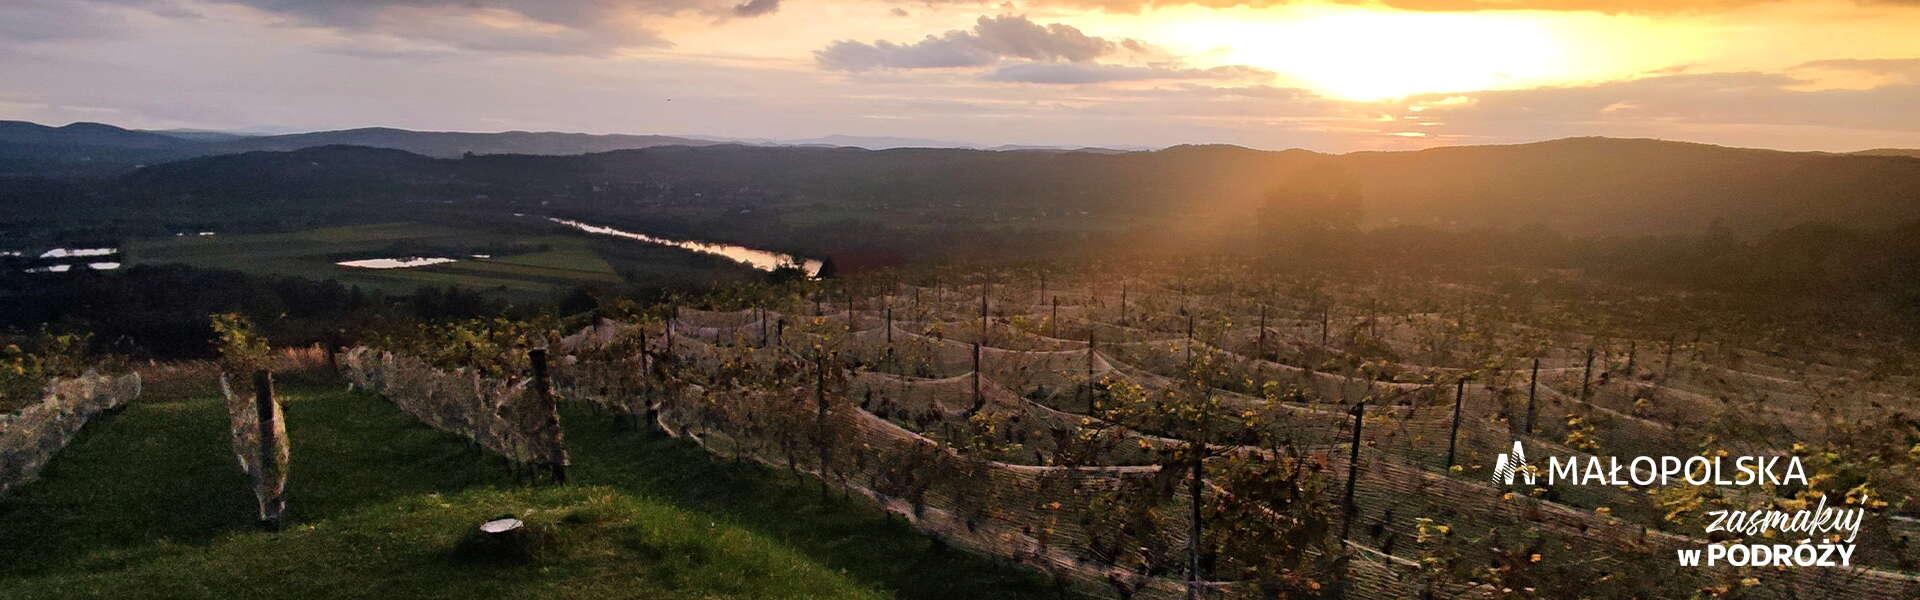 winnica z wieloma krzewami winorośli o zachodzie słońca, dookoła zielone wznieniesia. W prawym dolnym rogu logo Małopolski i napis Zasmakuj w podróży